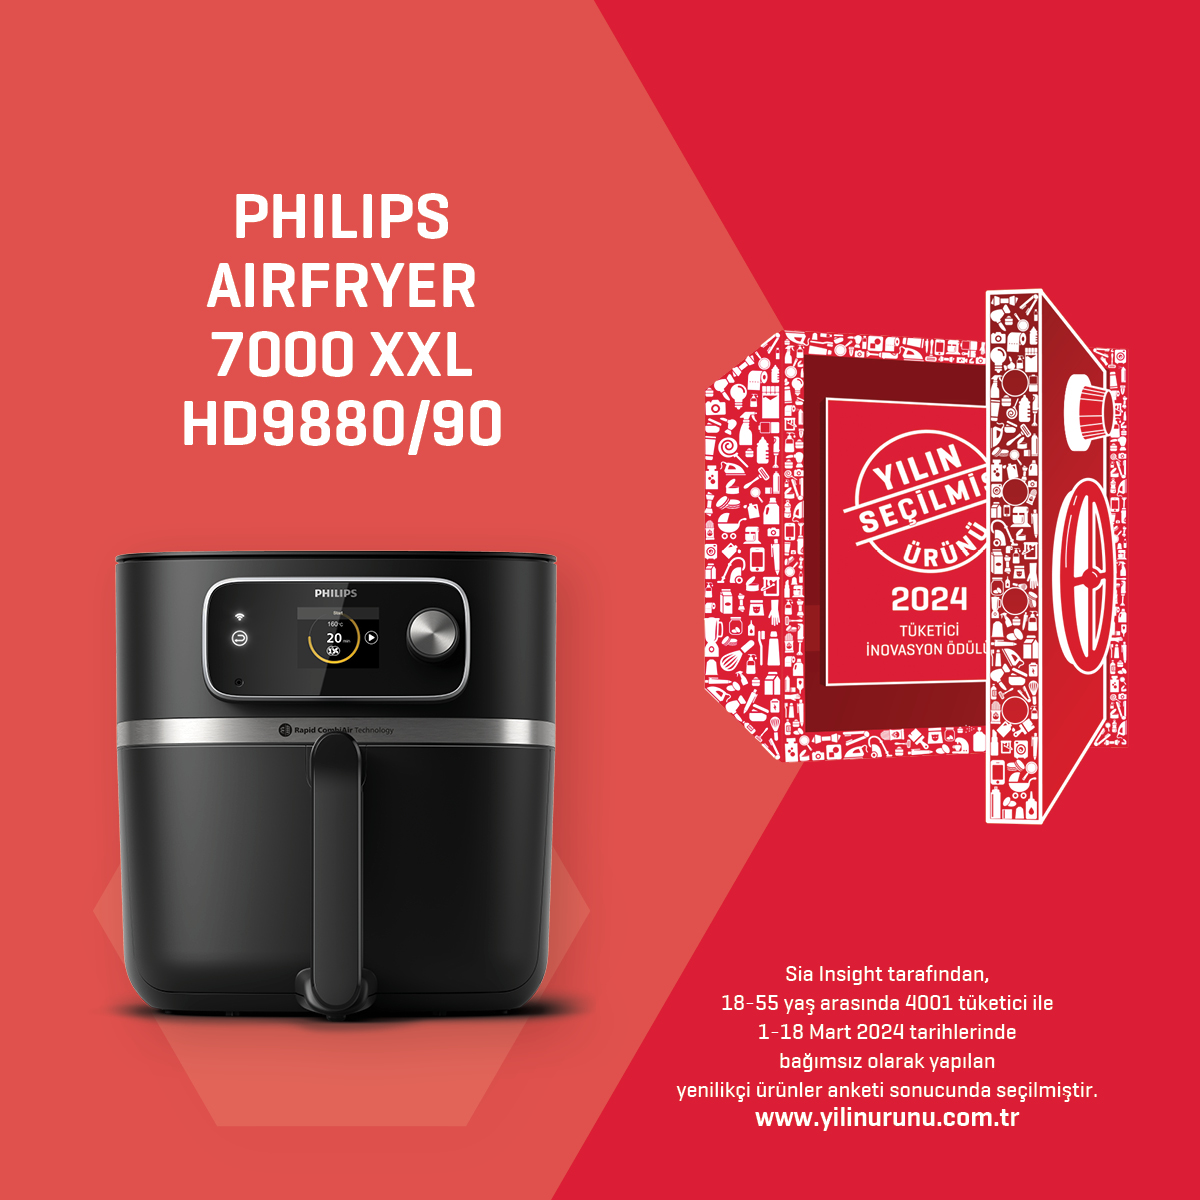 Philips Airfryer 7000 XXL HD988090